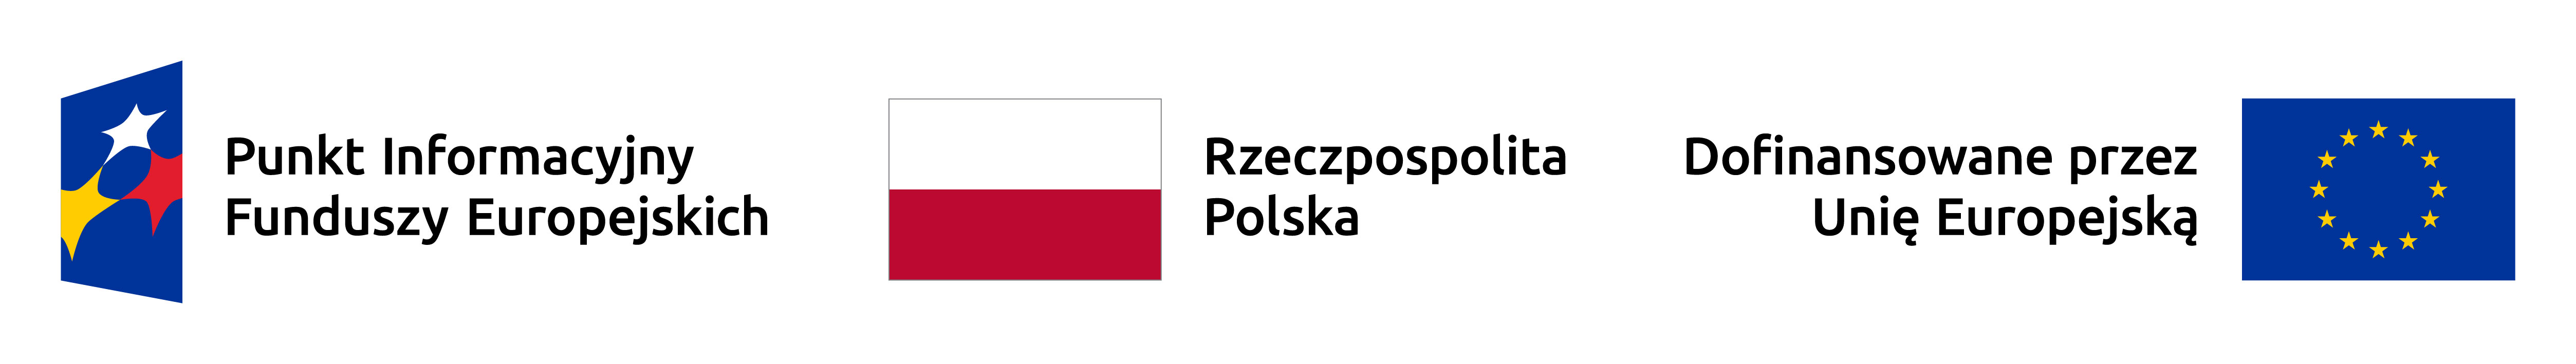 Zestawienie znaków składające się ze znaków Punkt Informacyjny Funduszy Europejskich, Rzeczpospolita Polska oraz Dofinansowane przez Unię Europejską